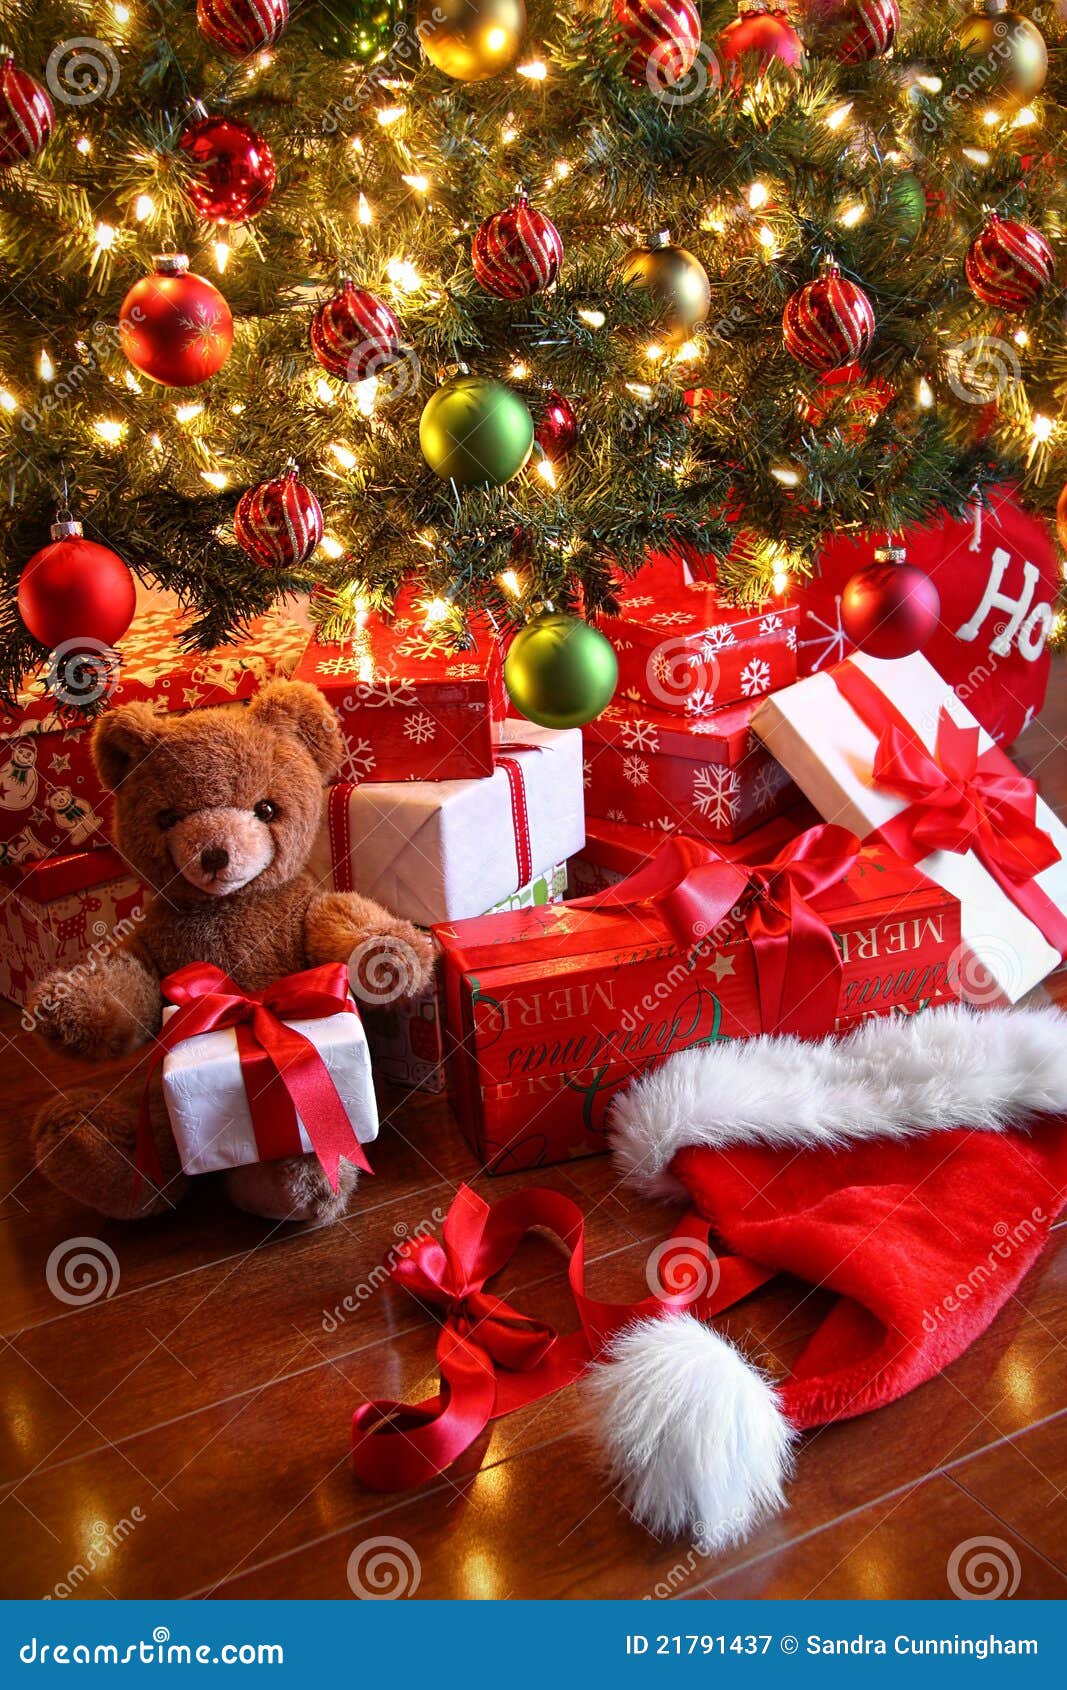 Regali Sotto L Albero Di Natale.Regali Sotto L Albero Per Natale Immagine Stock Immagine Di Lustro Festa 21791437